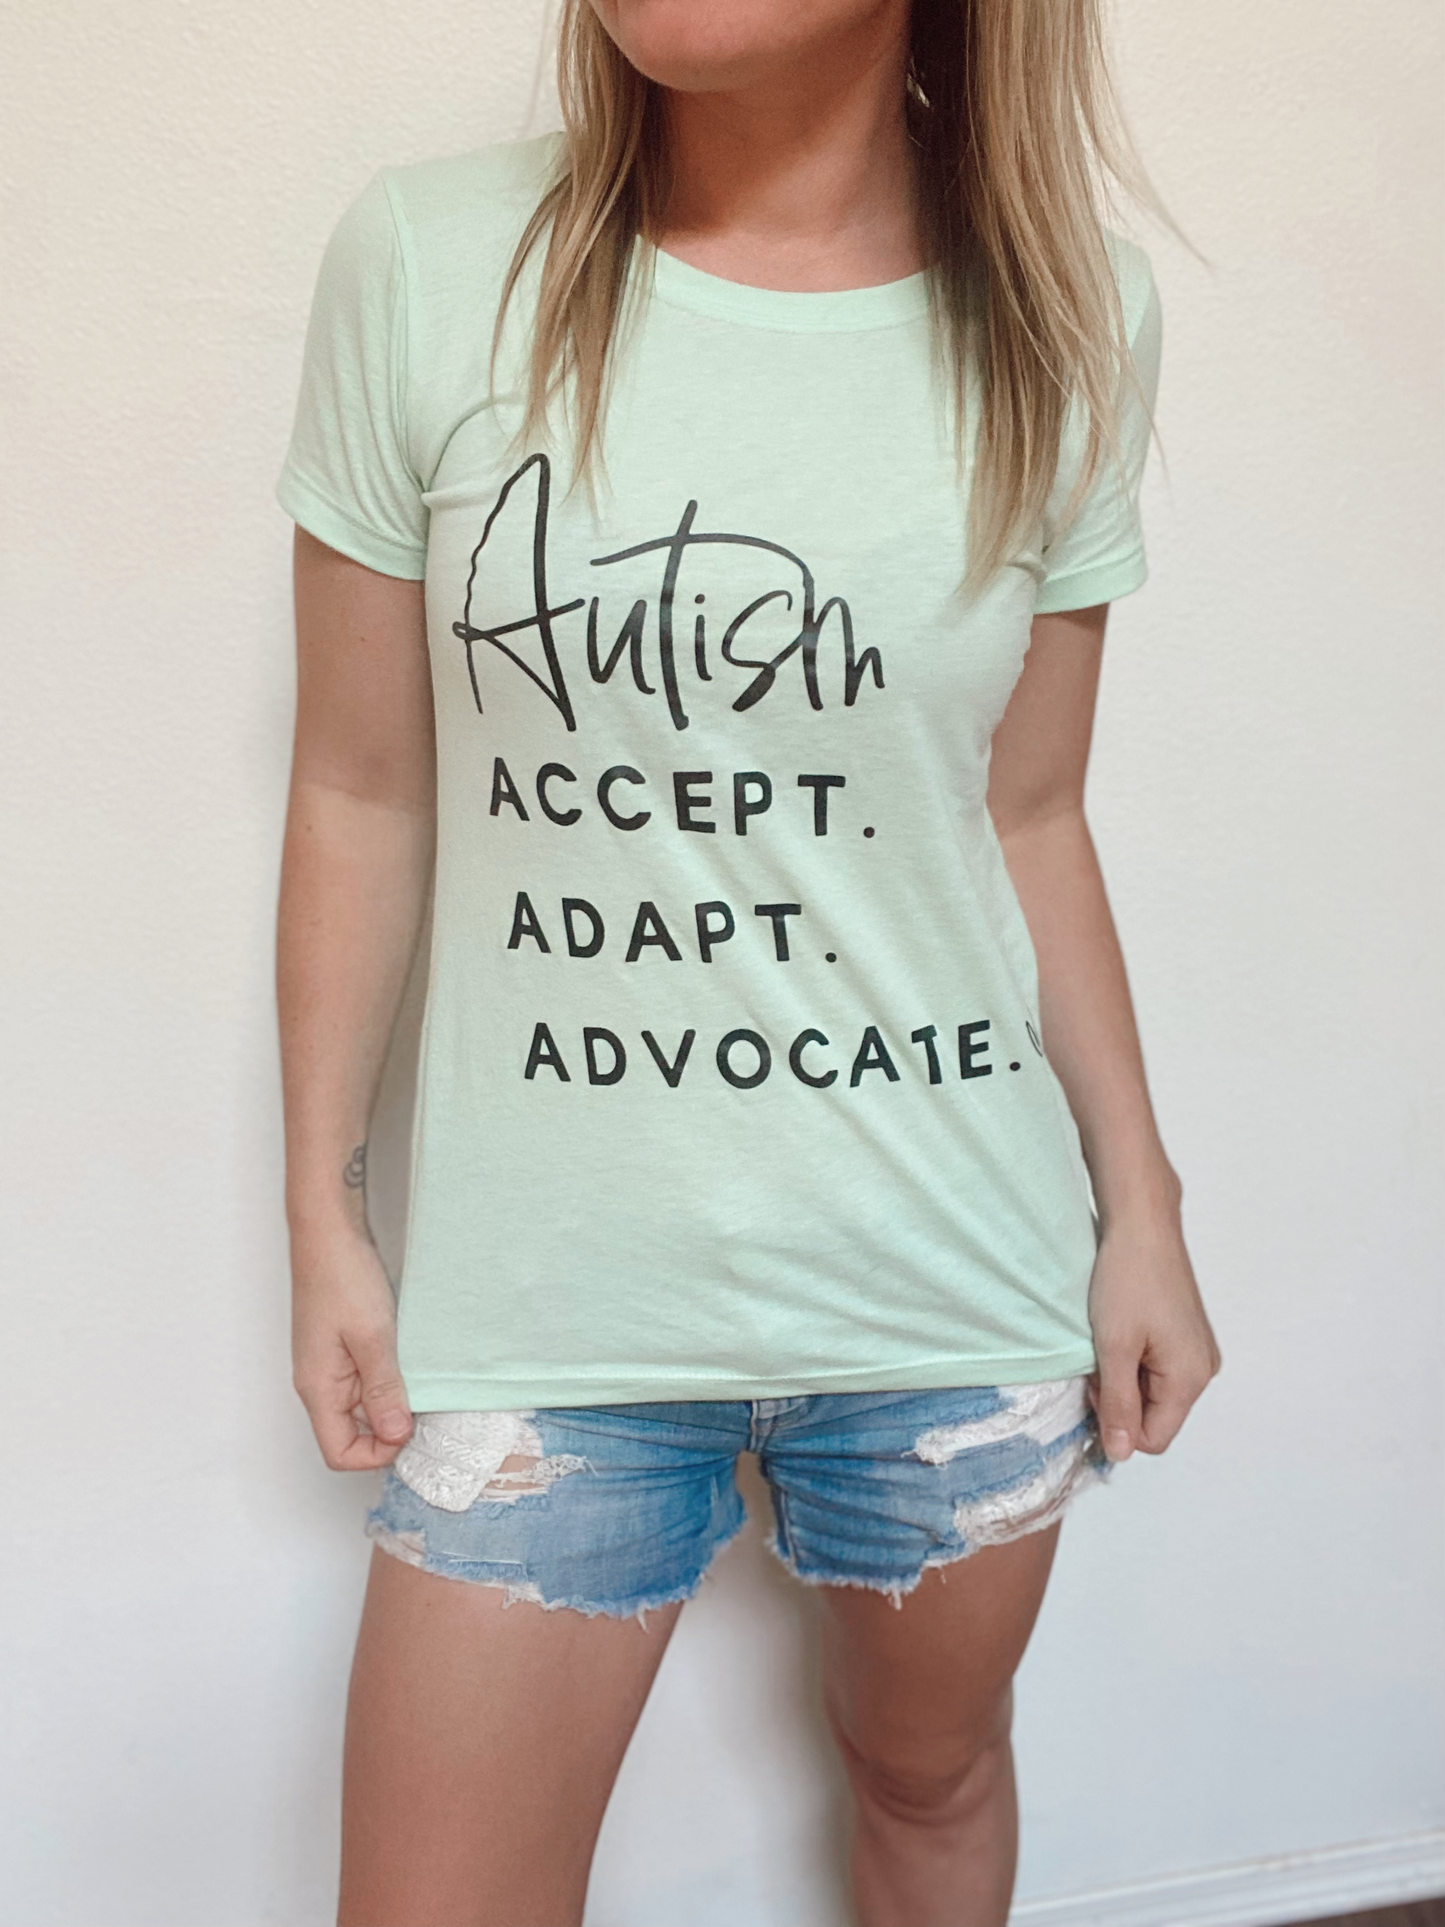 Accept. Adapt. Advocate.